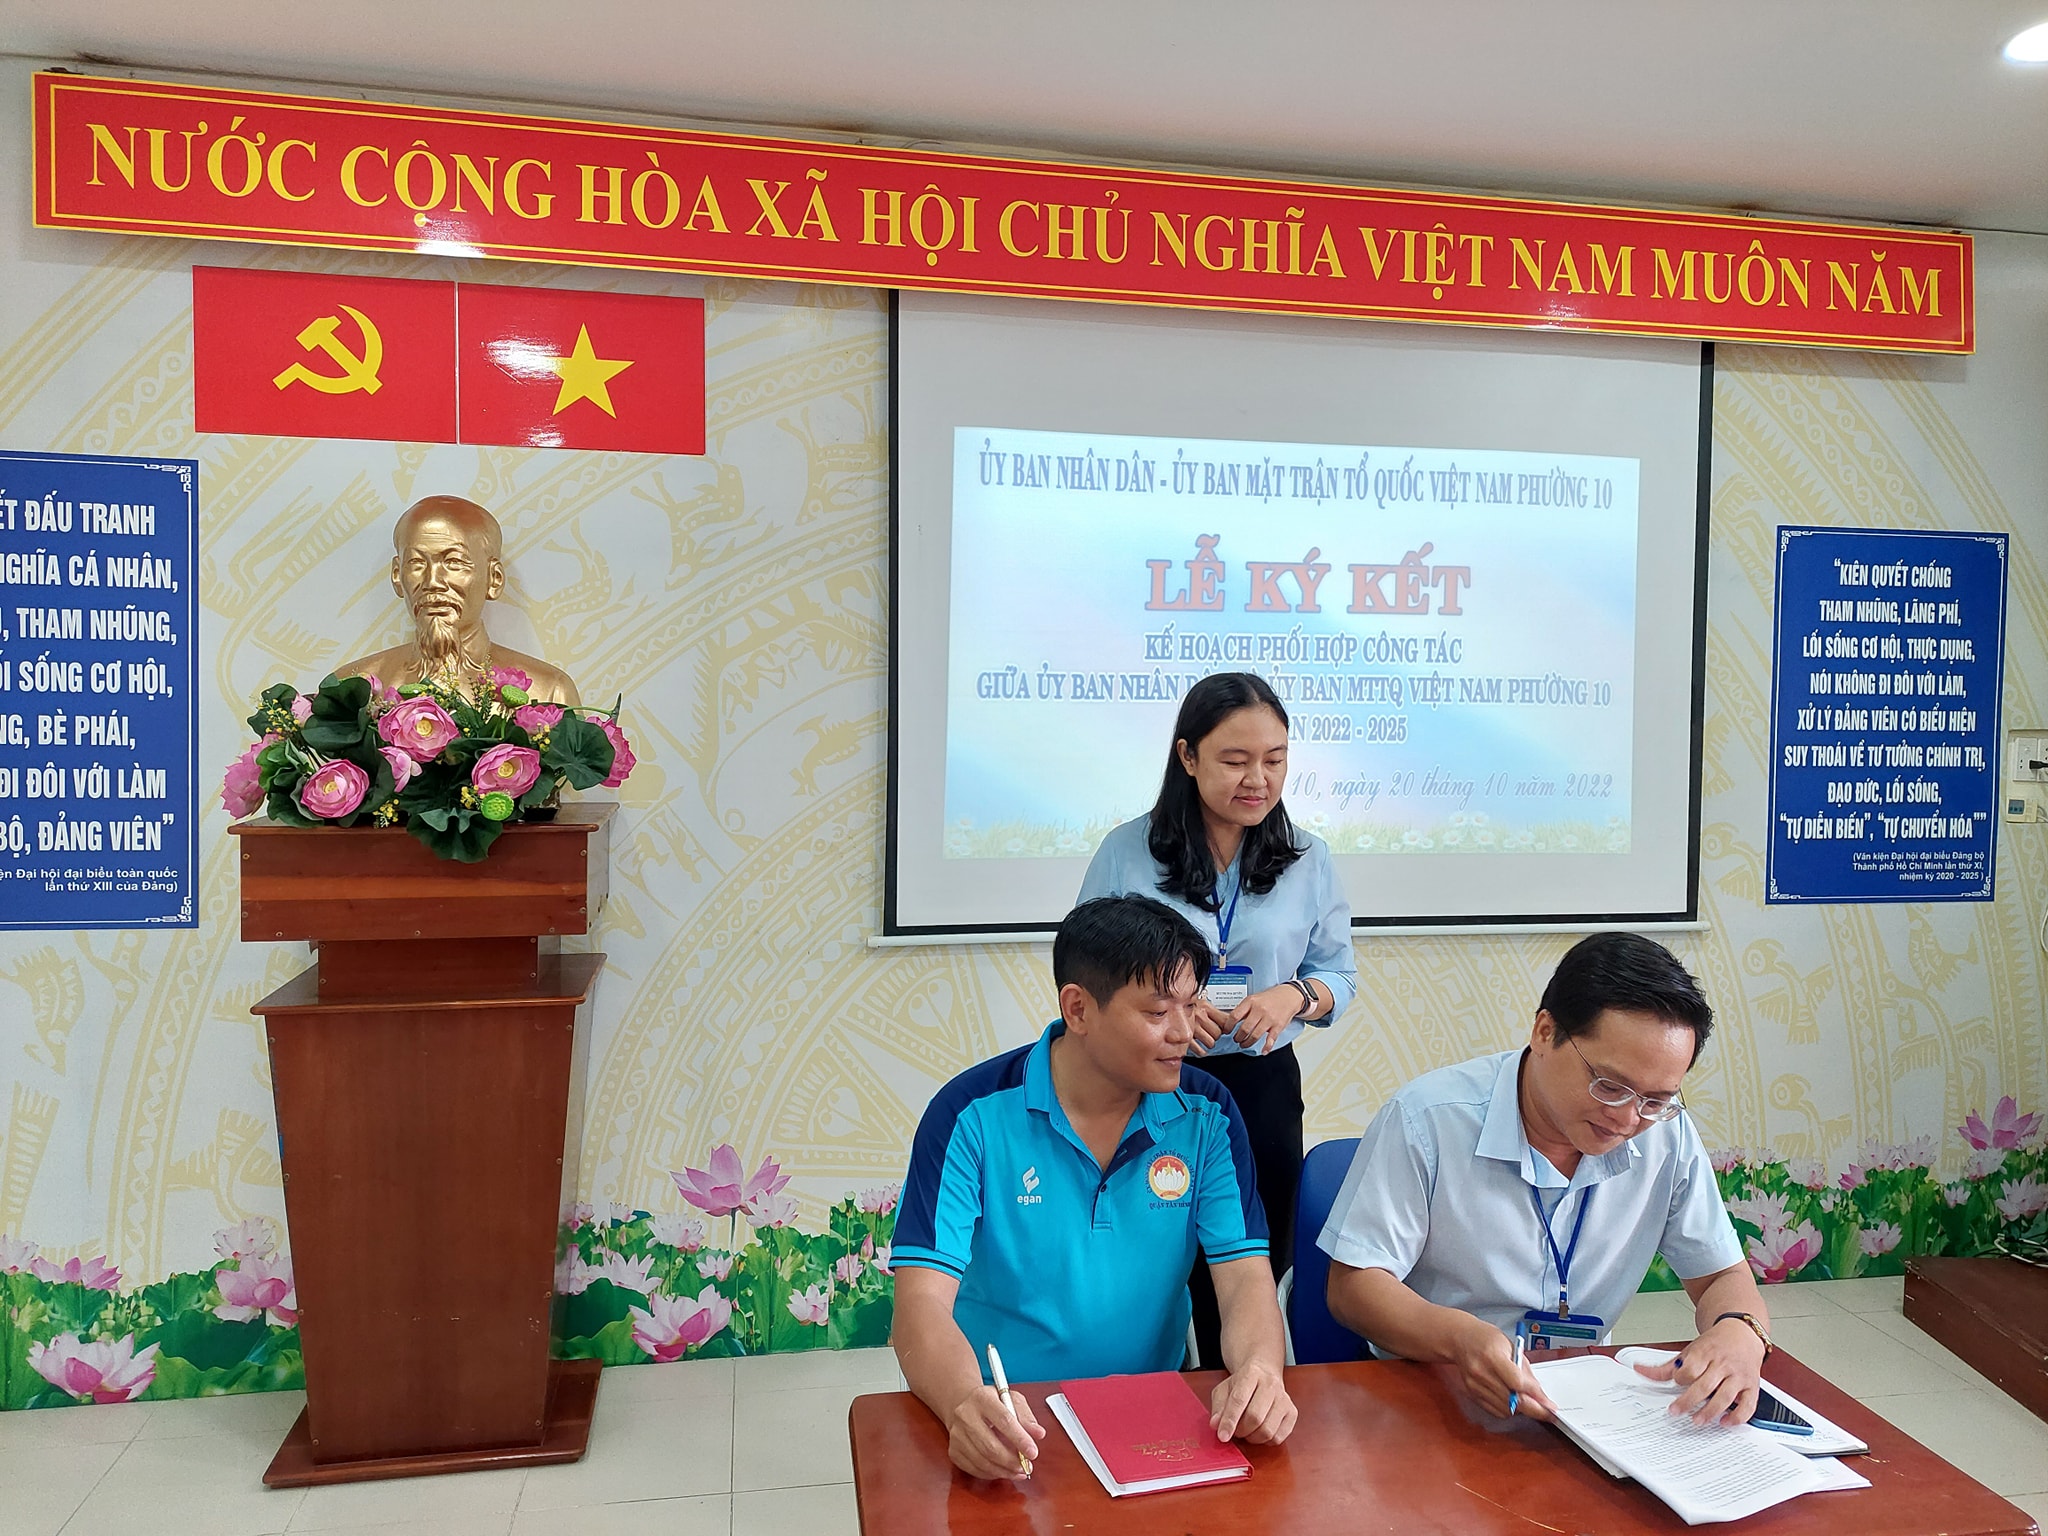 Ký kết kế hoạch phối hợp giai đoạn 2022 – 2025 giữa Ủy ban nhân dân và Ủy ban Mặt trận Tổ quốc Việt Nam Phường 10